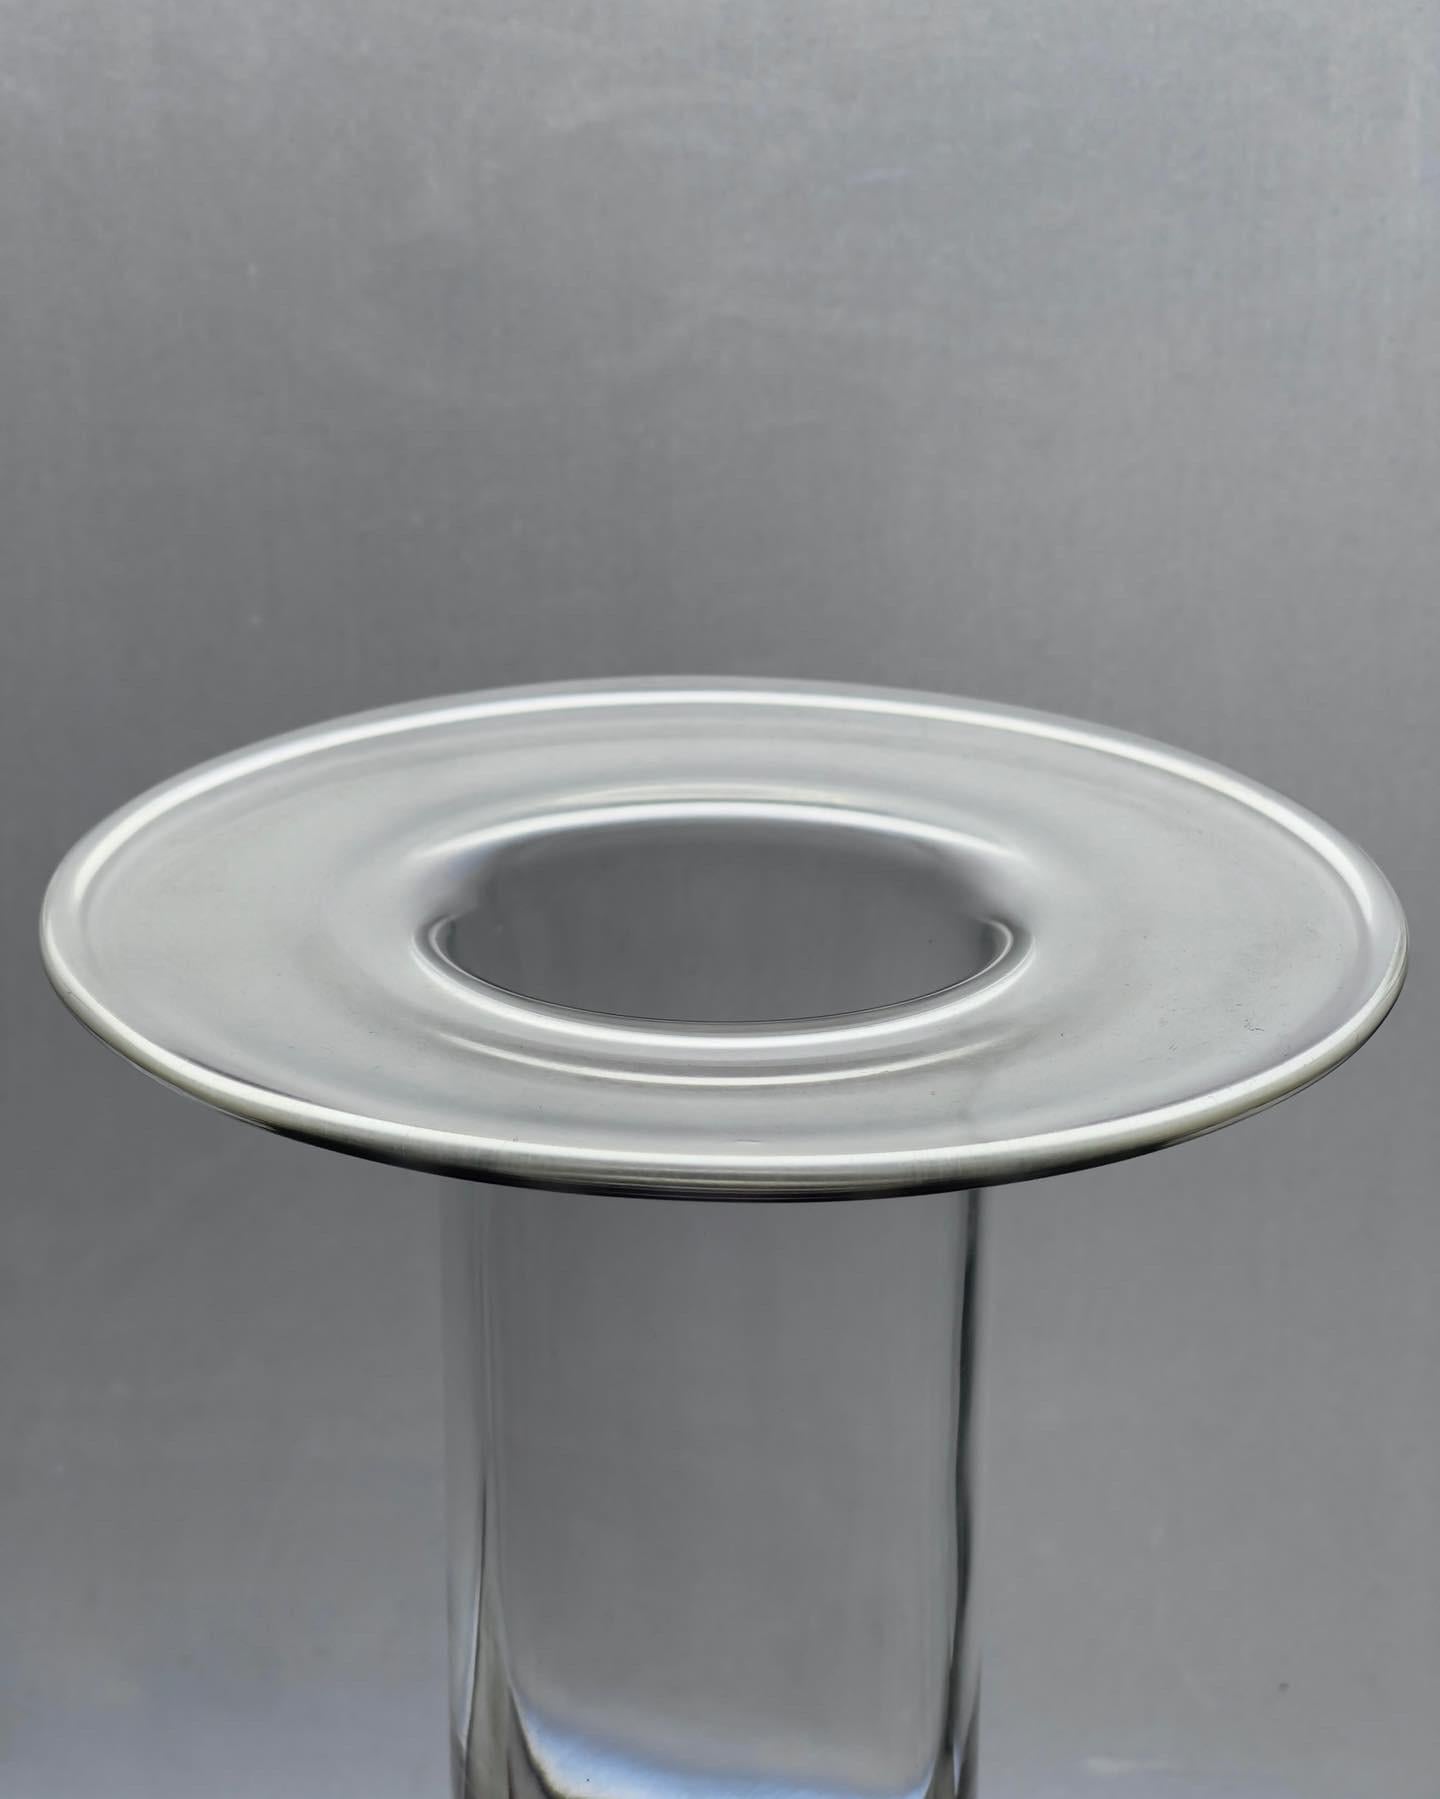 Seltene elegante mundgeblasene Glasarbeit von Orrefors in Schweden. In erster Linie ein Fest des reinen Lichts und der Form an sich, aber auch nützlich als Vase oder Krug. 
Das Stück ist signiert und gekennzeichnet. Er hat einen niedrigen